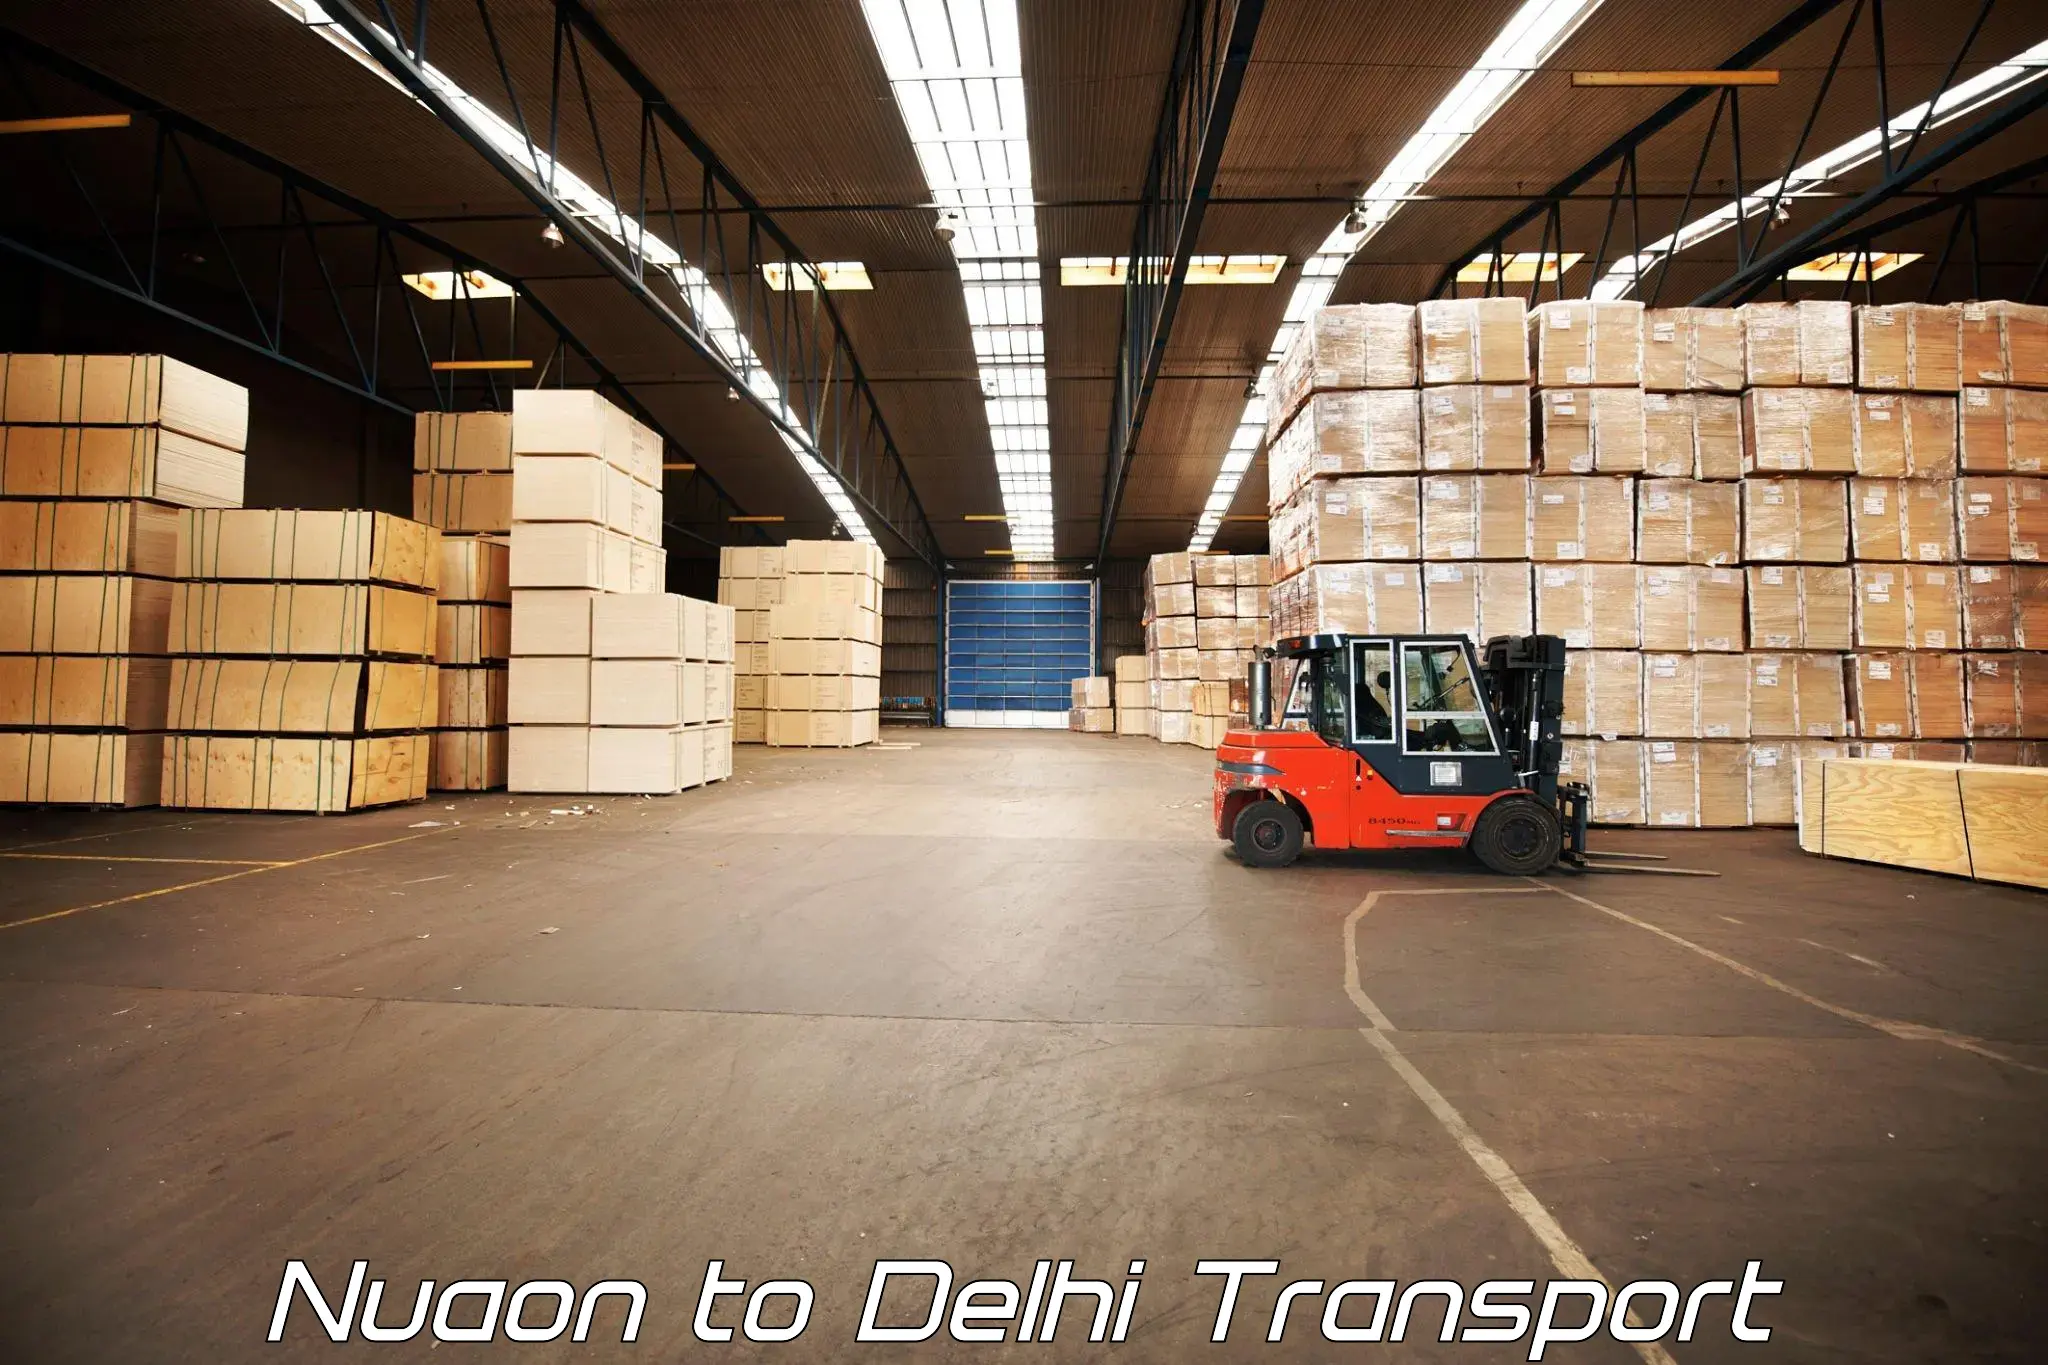 Shipping partner Nuaon to Delhi